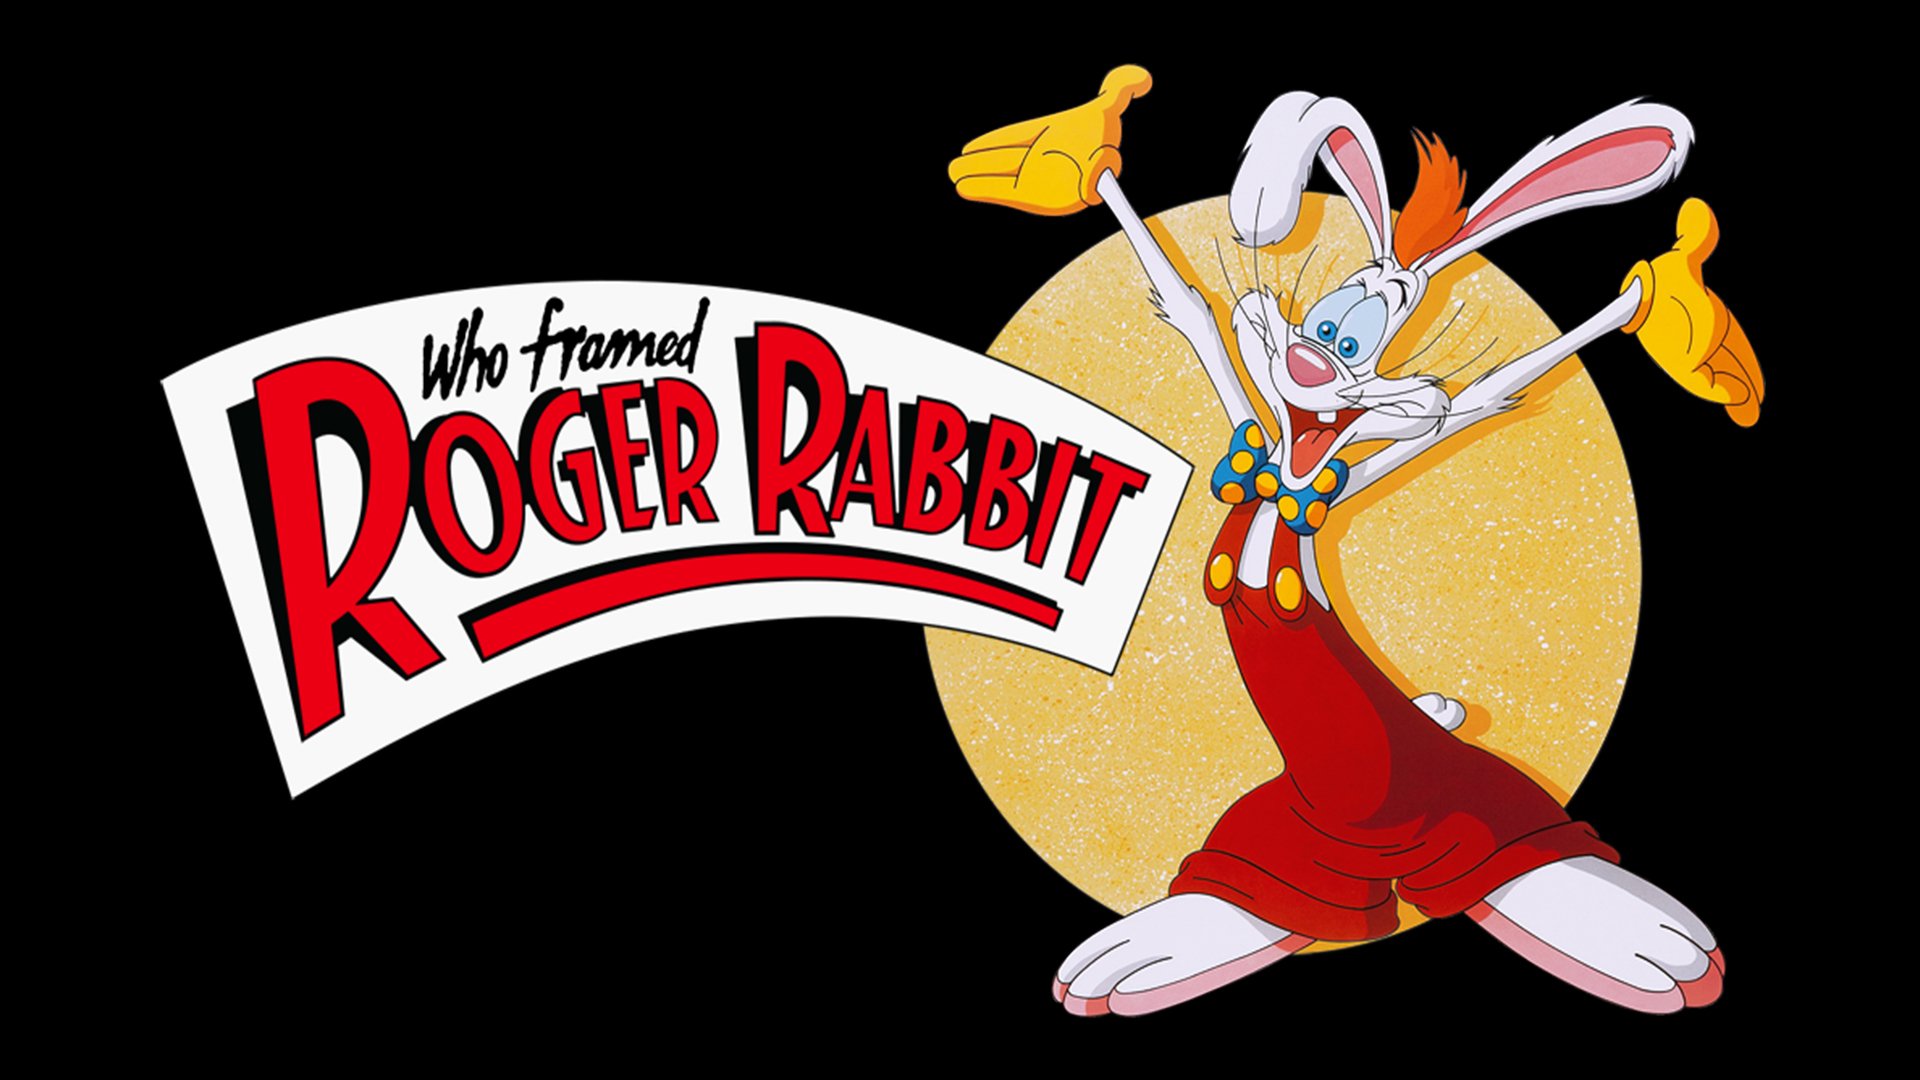 Who Framed Roger Rabbit? Wallpapers